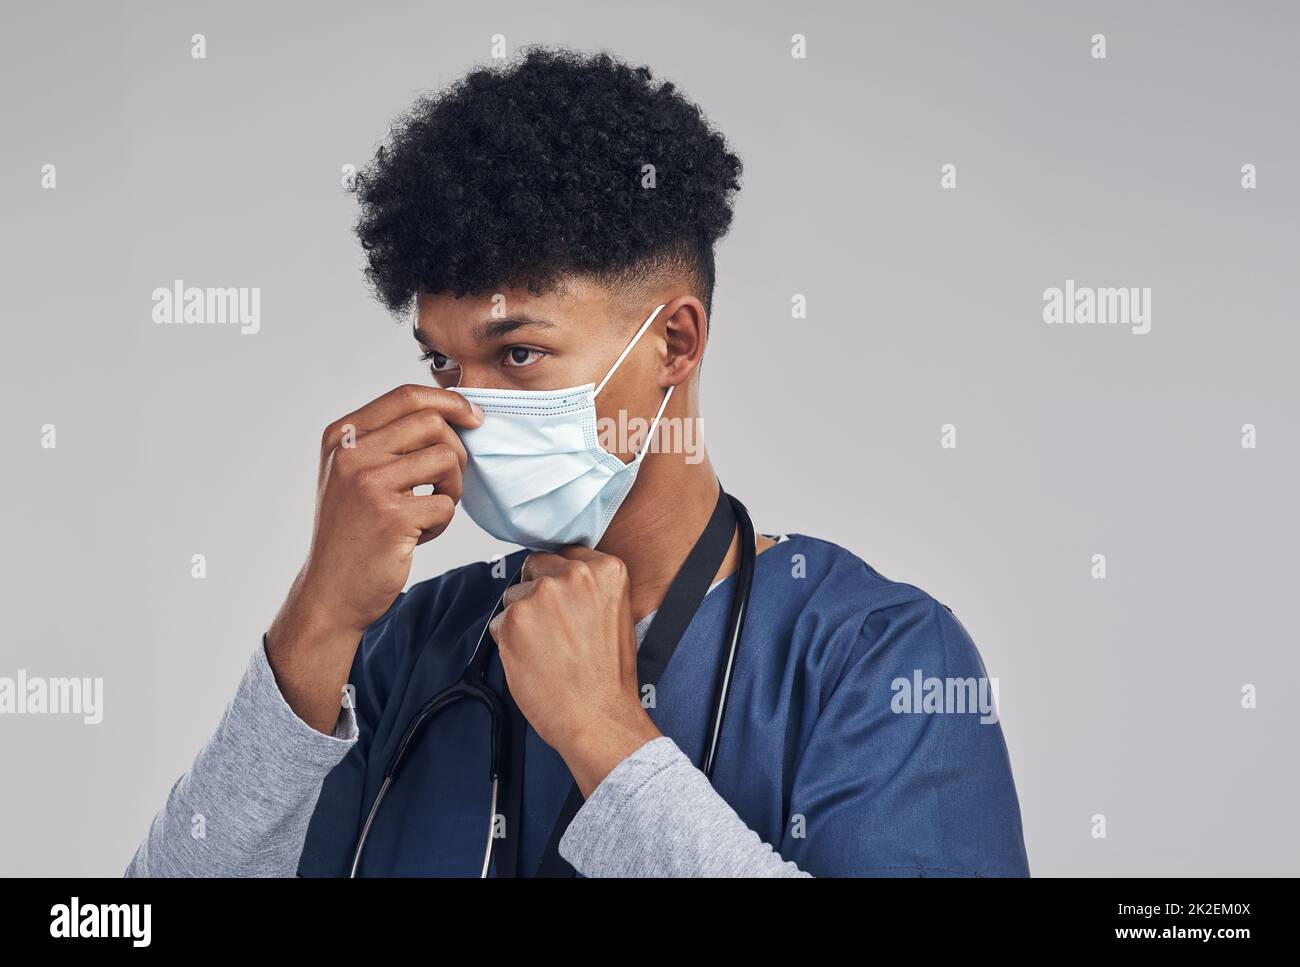 Deine Maske sollte deine Nase und deinen Mund bedecken. Aufnahme eines Krankenpflegers, der eine OP-Maske trägt, während er vor einem grauen Hintergrund steht. Stockfoto